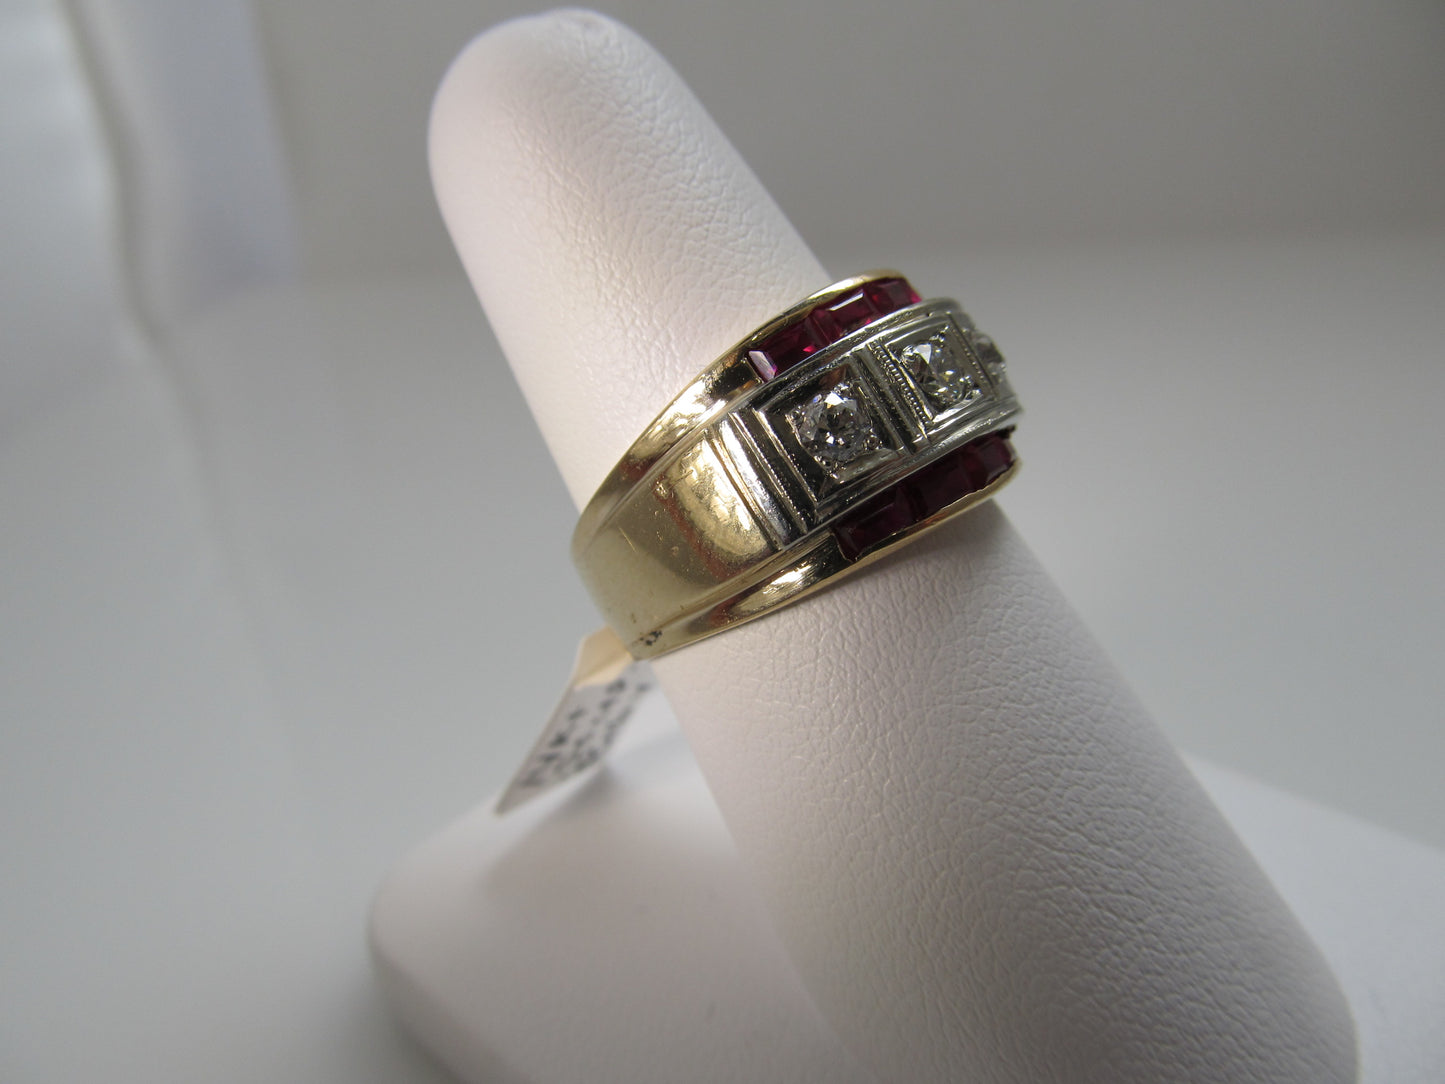 Vintage 3 stone diamond ring with rubies